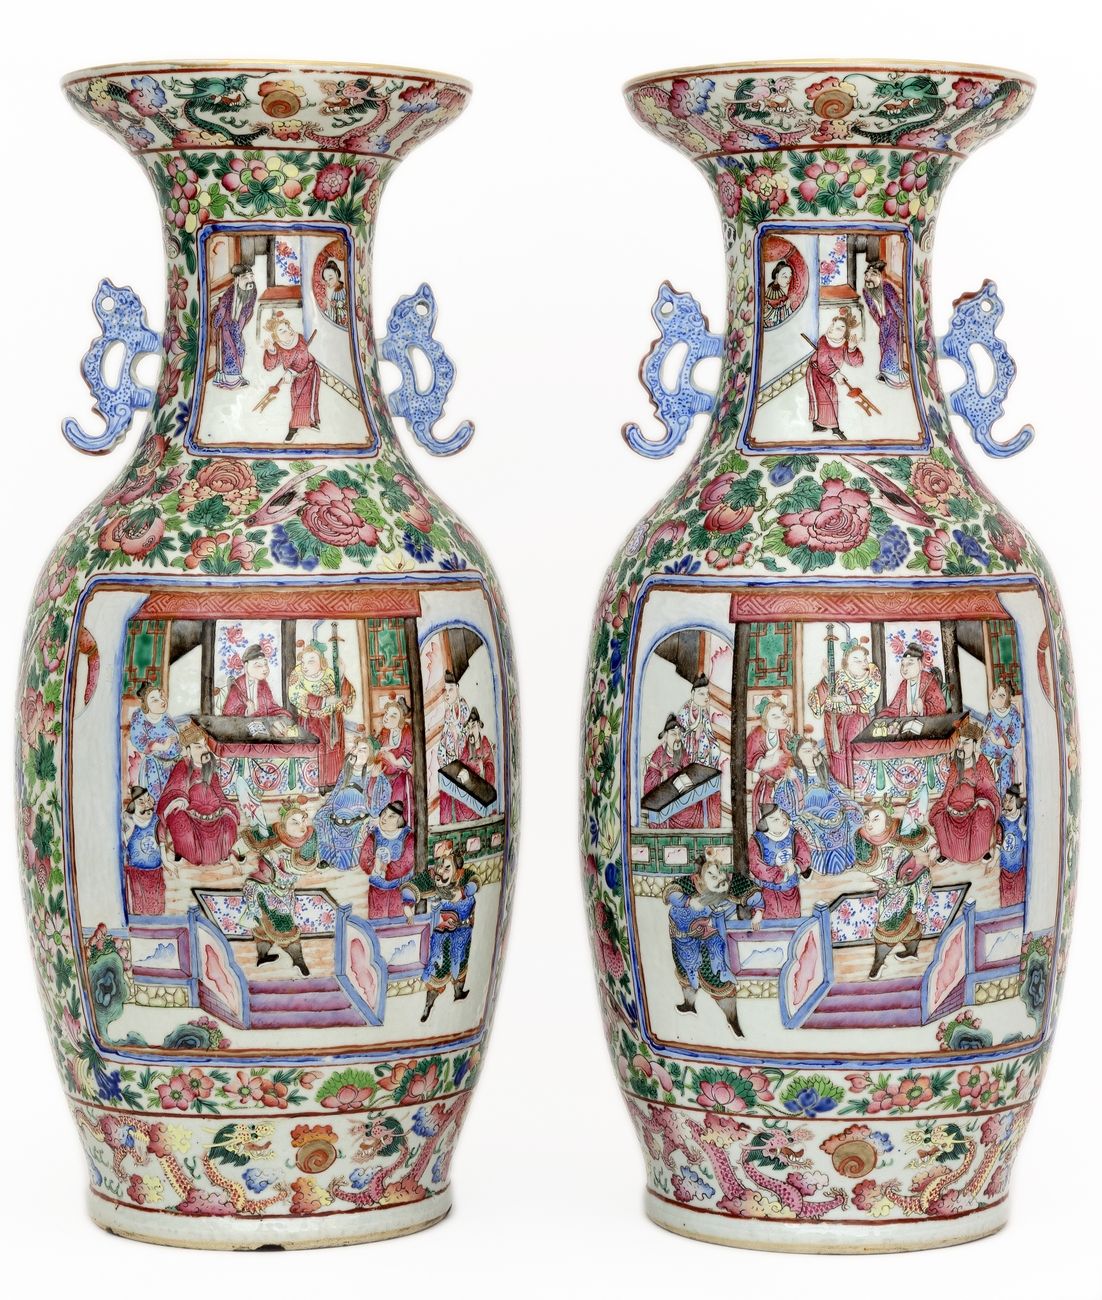 Null China, siglo XIX
Pareja de jarrones de porcelana de Cantón decorados en esm&hellip;